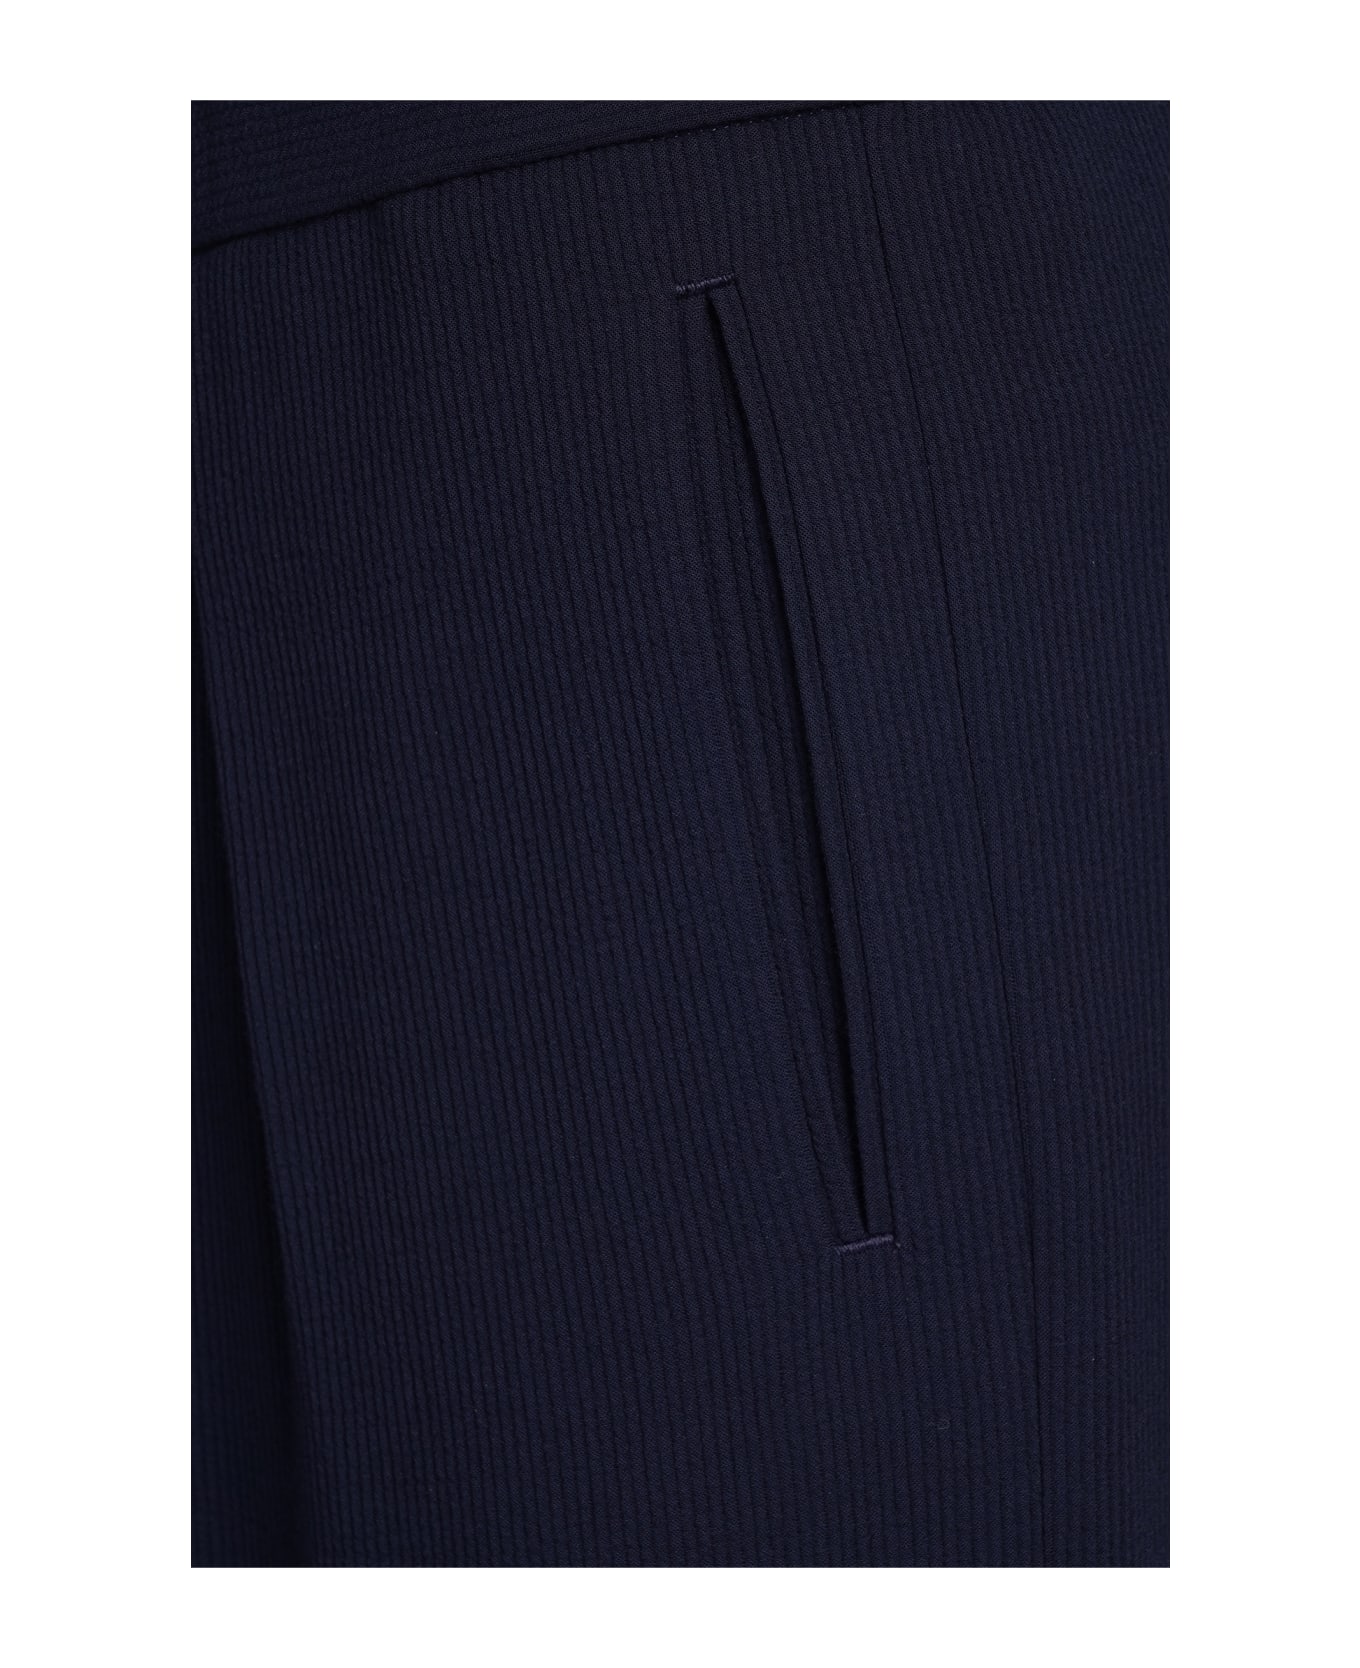 Giorgio Armani Elastic Waist Knit Trousers - blue